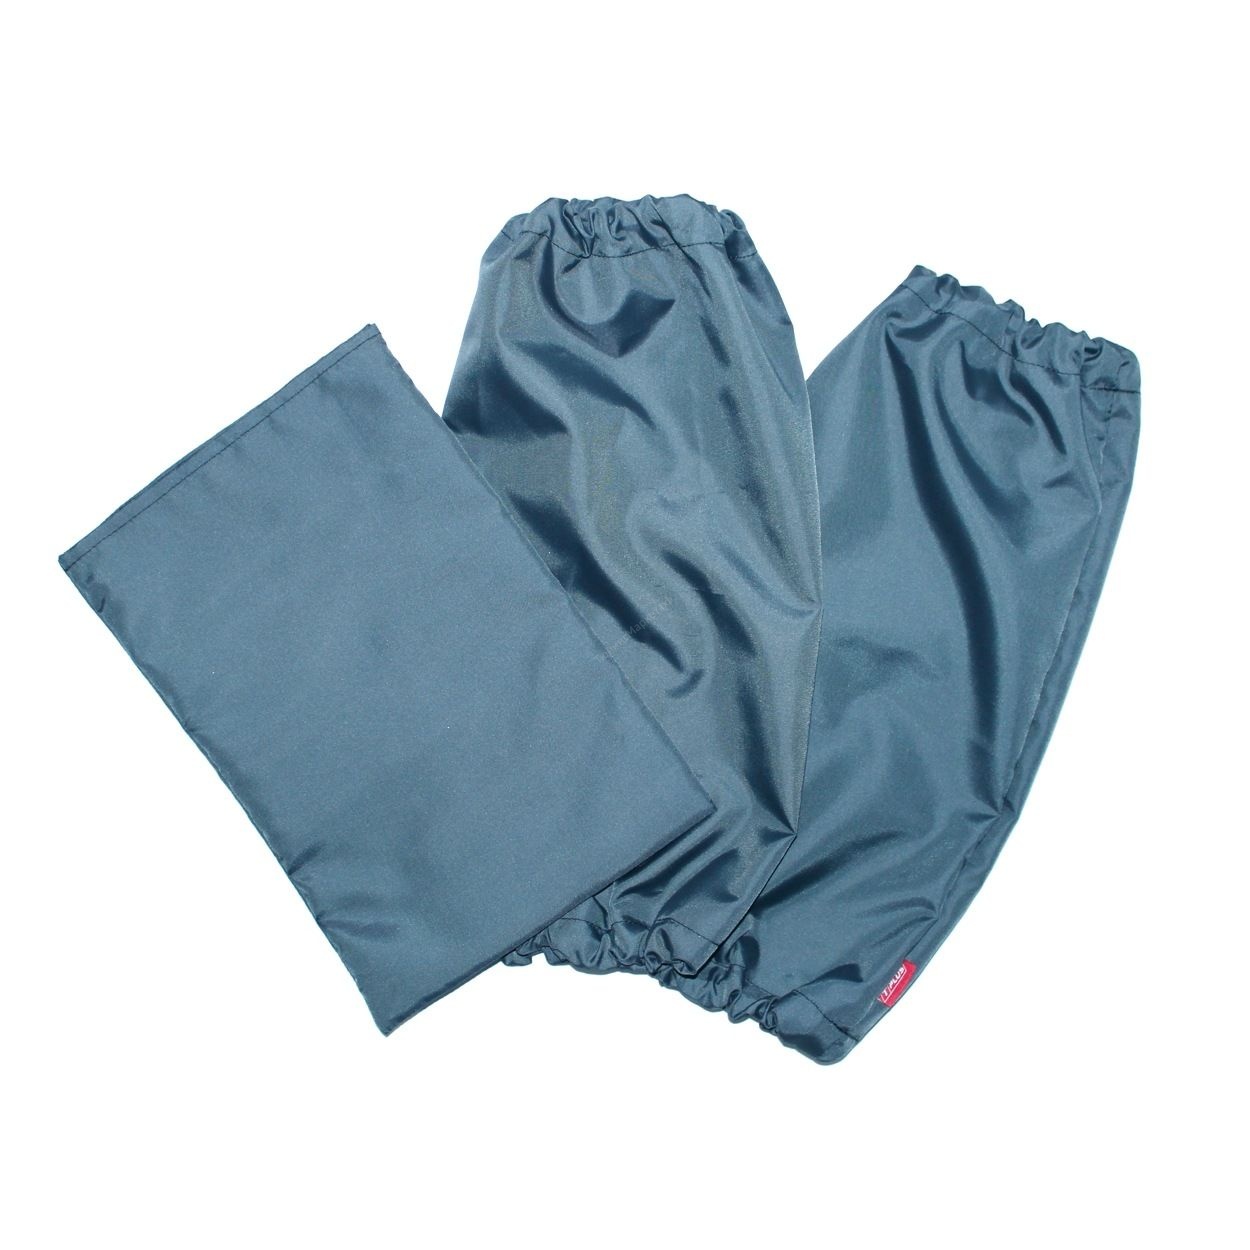 Нарукавники и коврик-мешок под колени "T-plus" (Серый) 